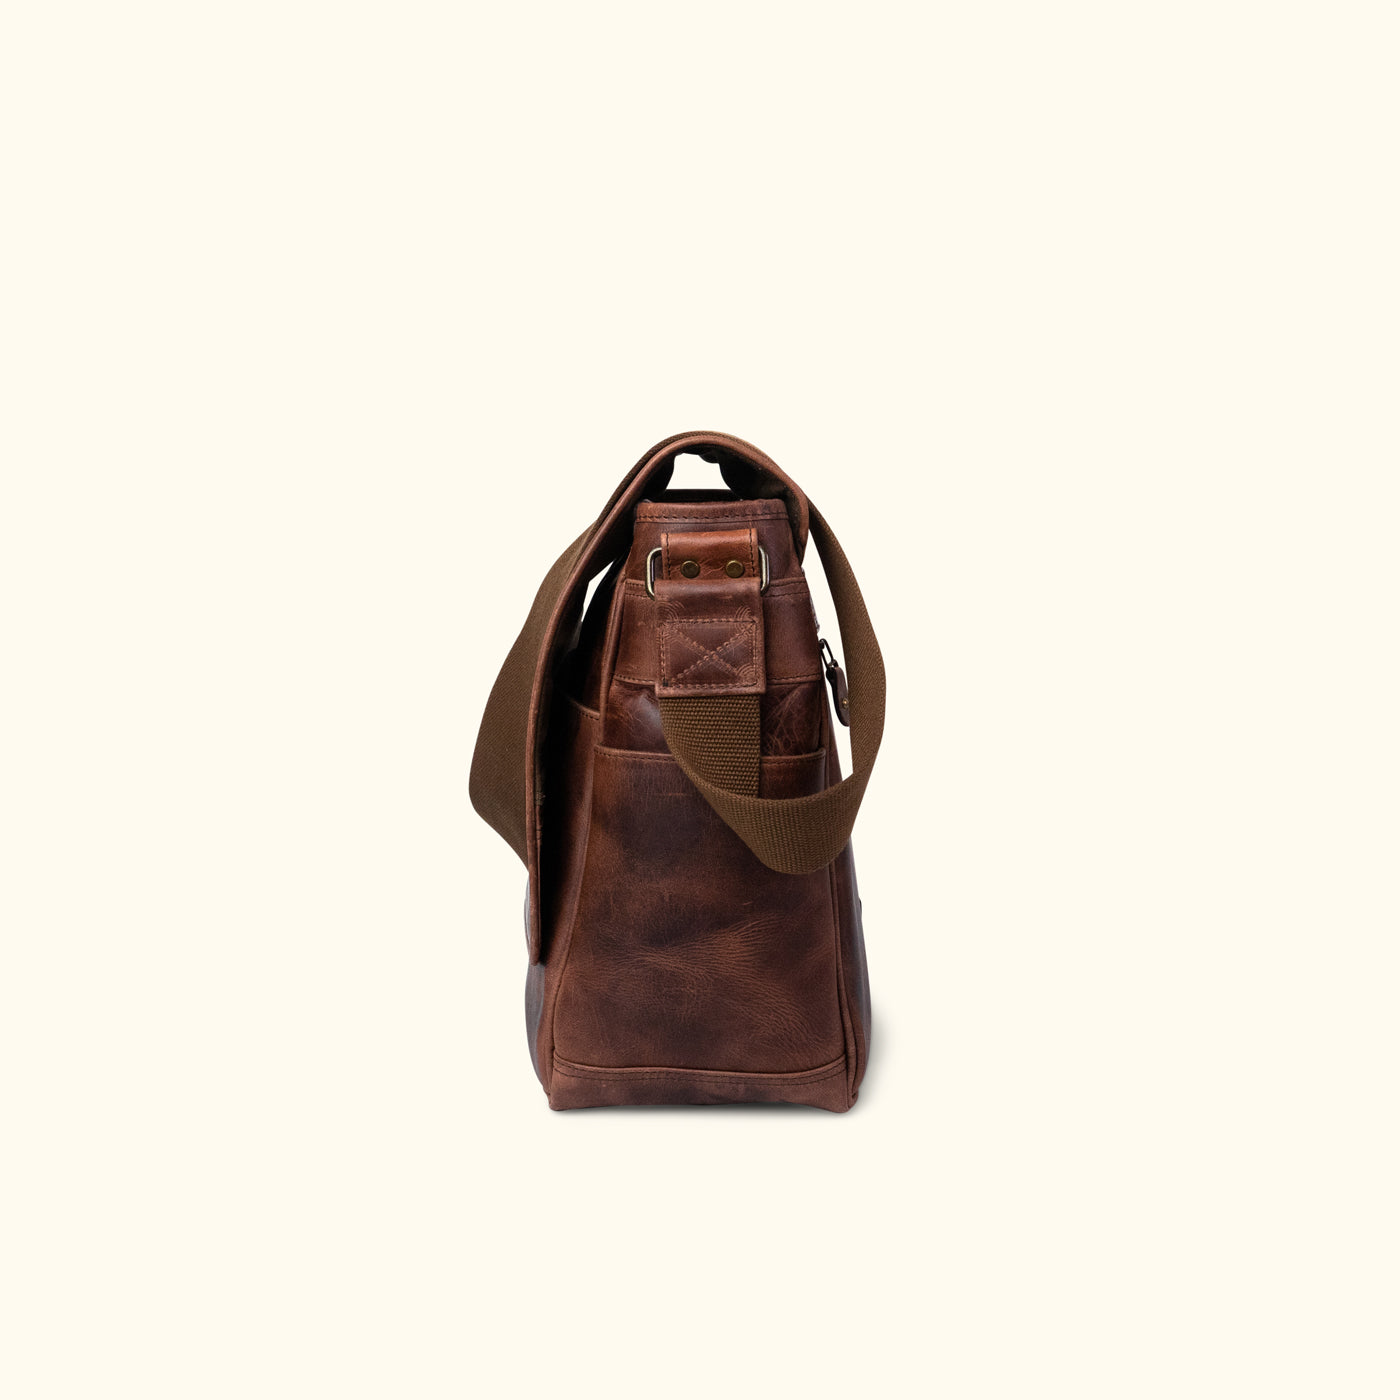 Roosevelt Buffalo Leather Satchel Messenger Bag - Large | Dark Oak